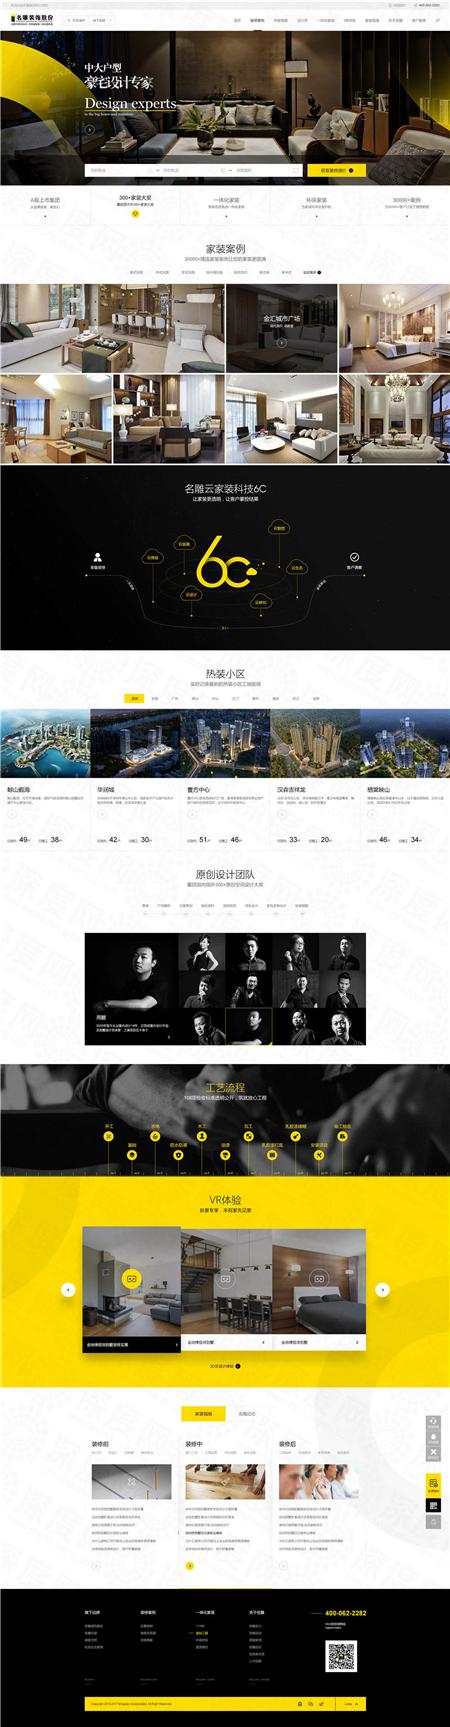 深圳名雕装饰品牌网站建设案例